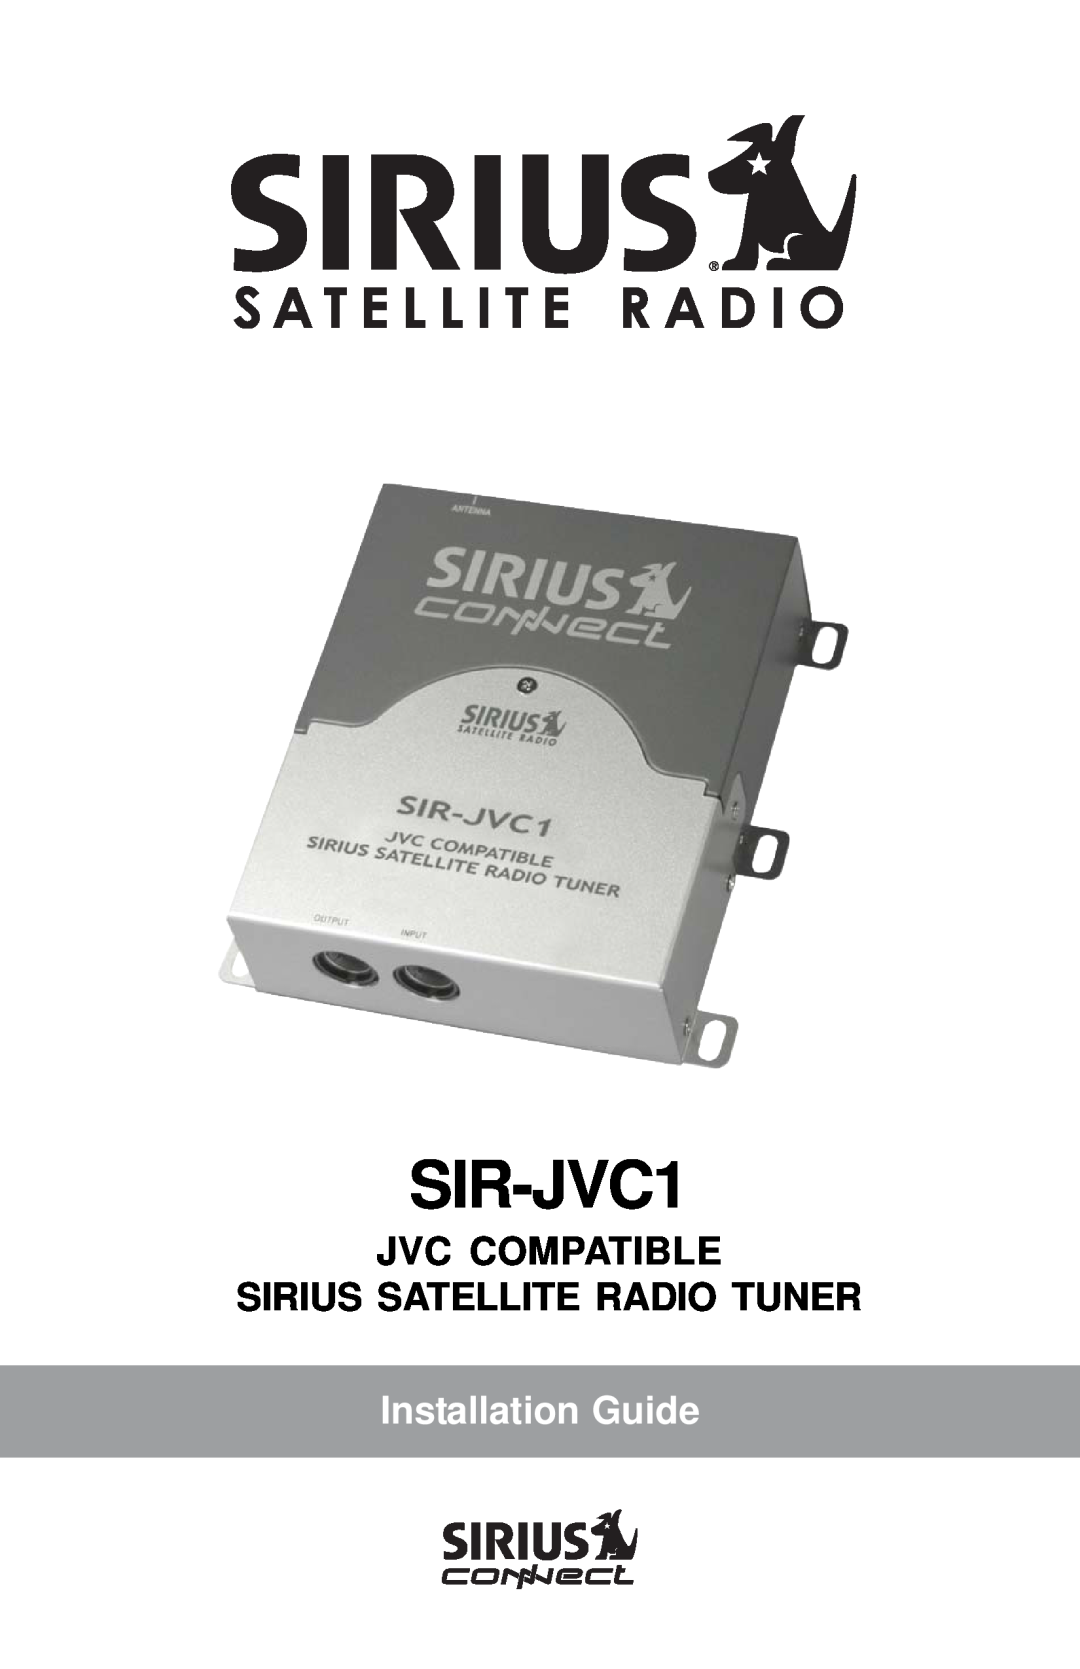 Sirius Satellite Radio SIR-JVC1 manual Jvc Compatible Sirius Satellite Radio Tuner, Installation Guide 